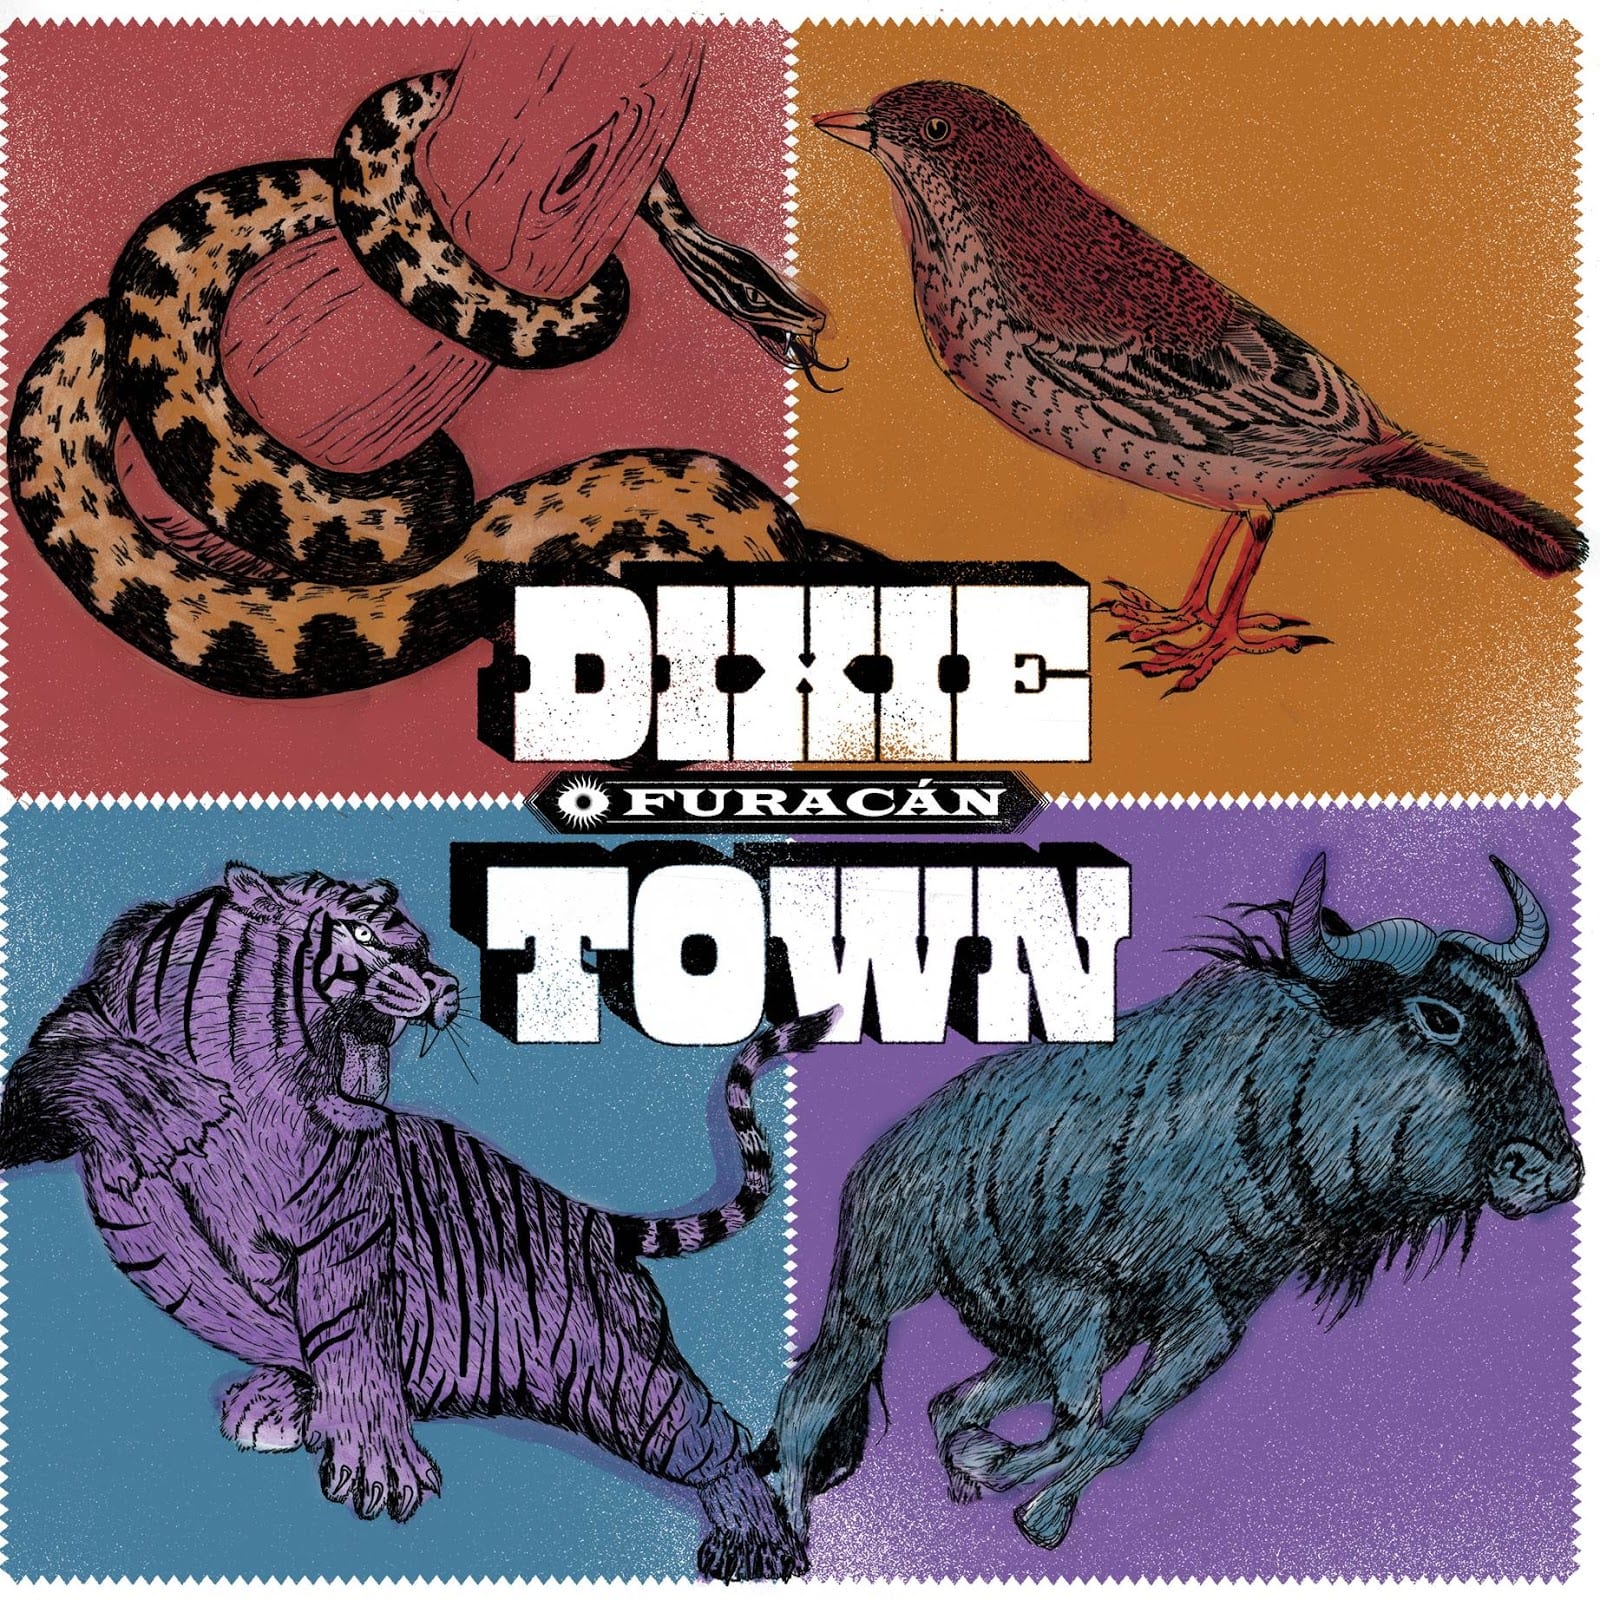 Dixie Town – O Furacán : Crítica del disco. Review.